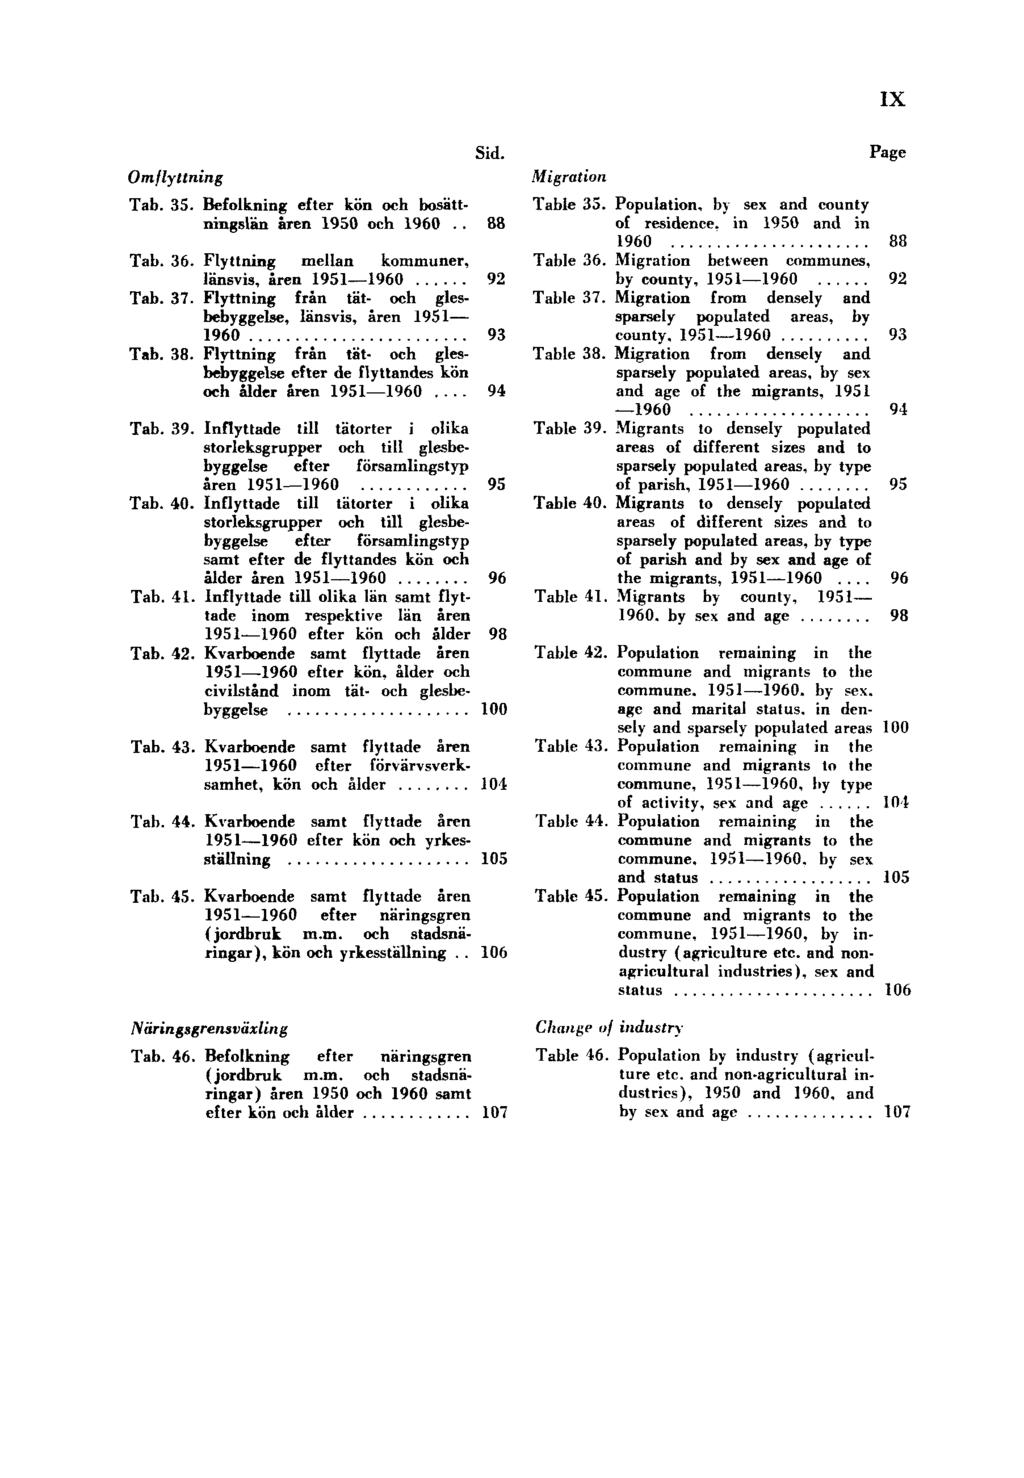 IX Omflyttning Sid. Tab. 35. Befolkning efter kön och bosättningslän åren 1950 och 1960 88 Tab. 36. Flyttning mellan kommuner, länsvis, åren 1951 1960 92 Tab. 37.